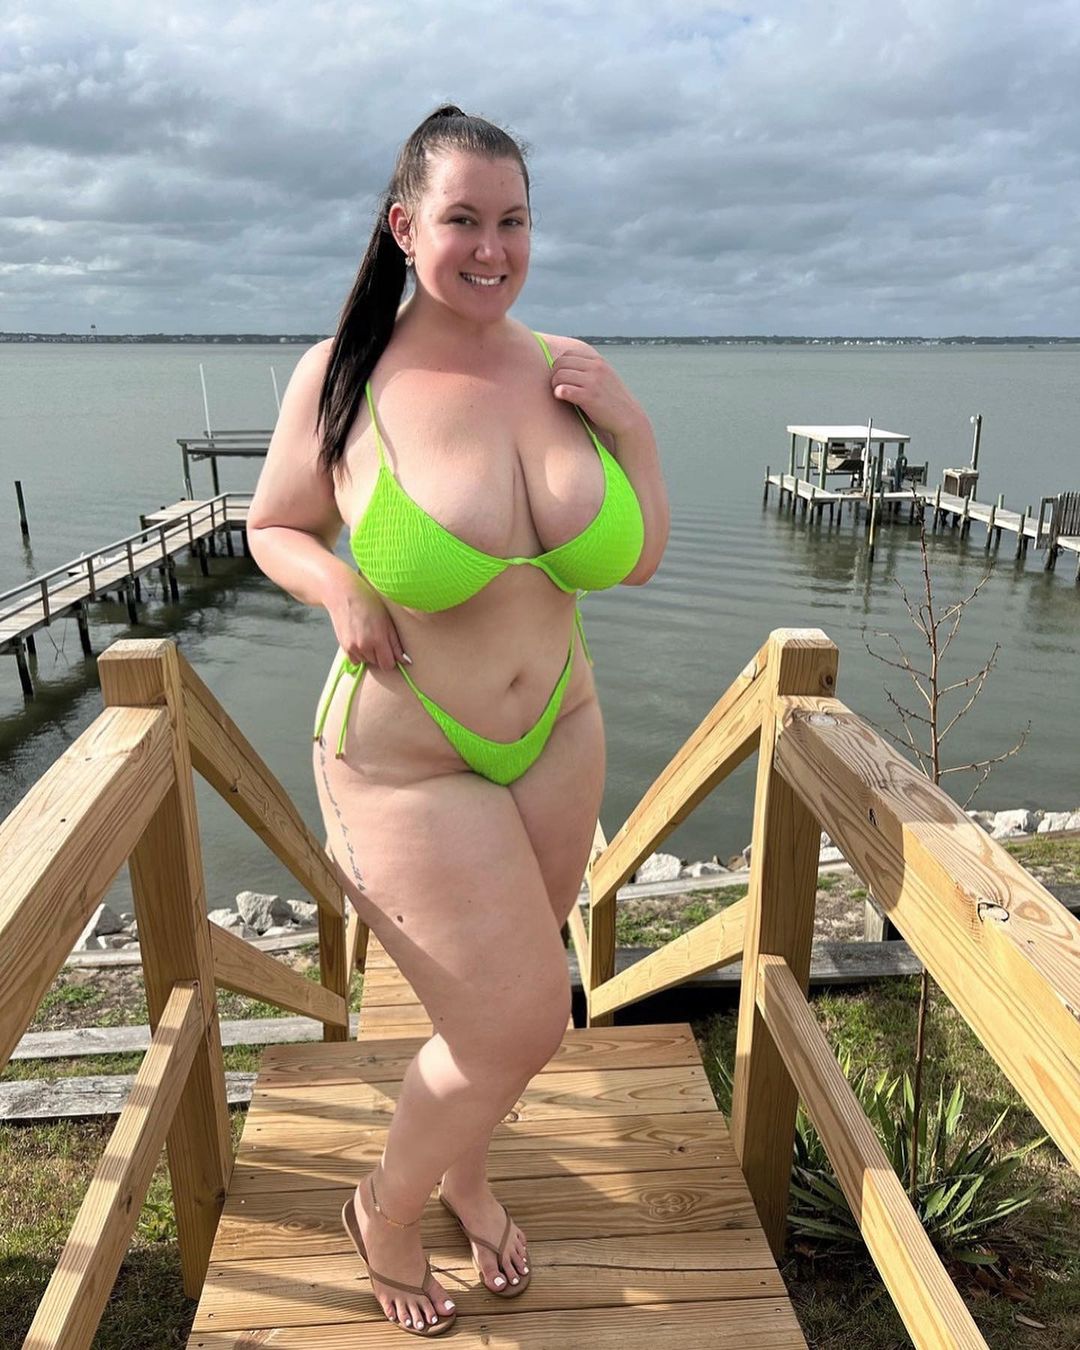 Lauren Butler picture in green bikini from Instagram